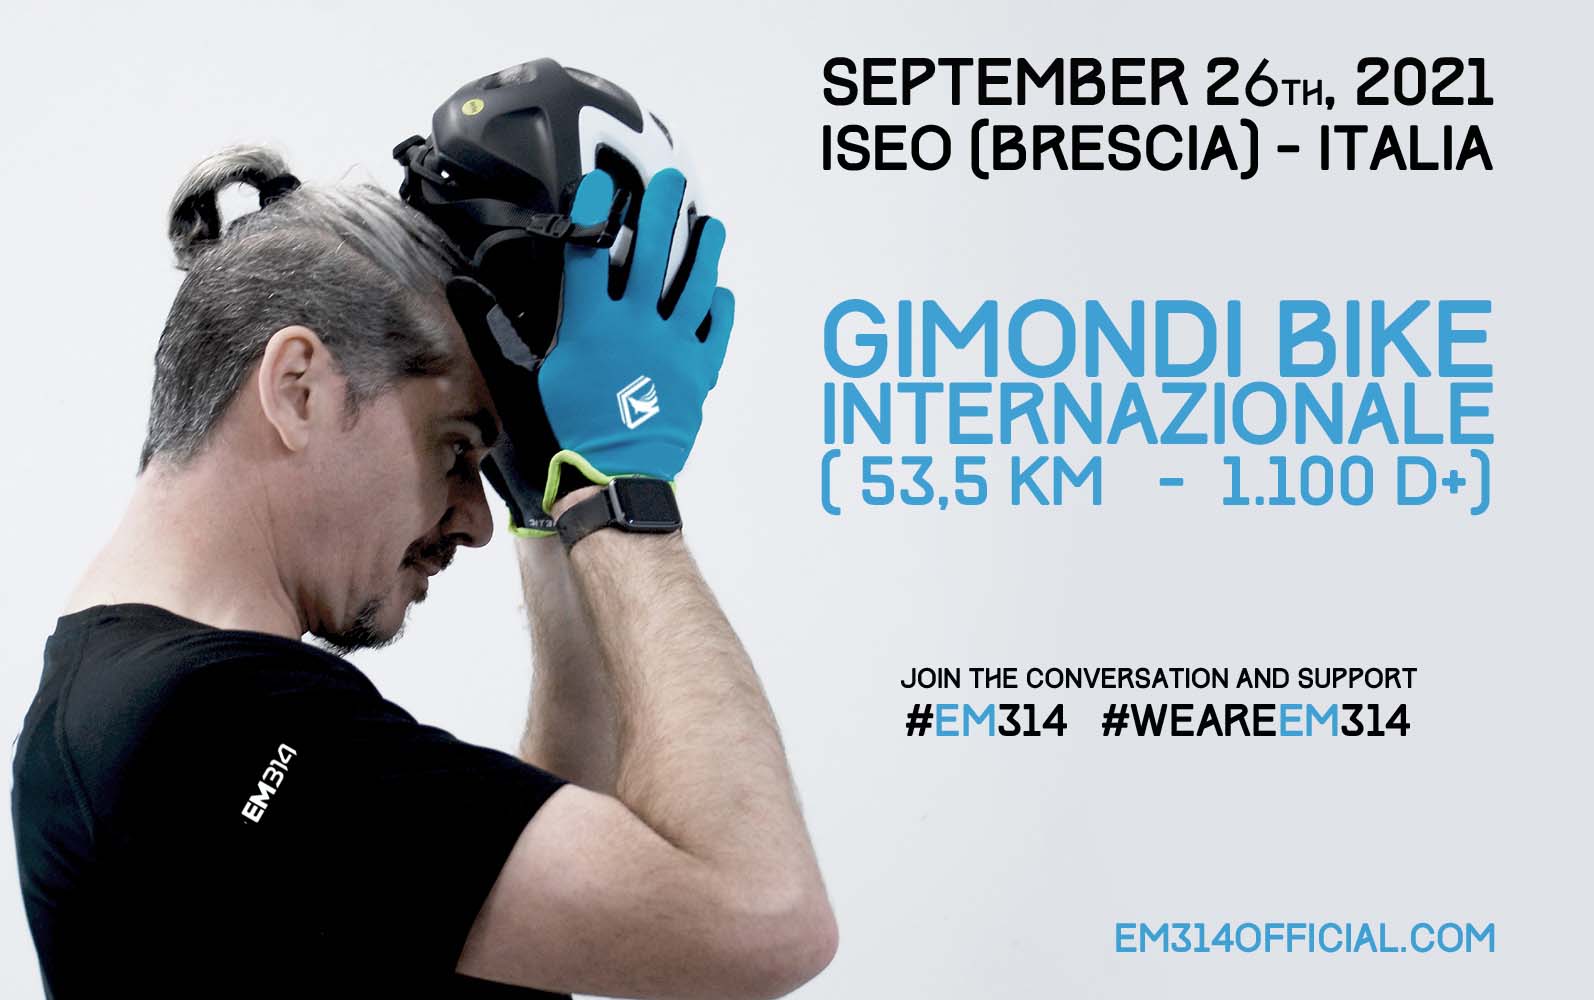 Emmanuele Macaluso “EM314” - l’atleta più green d’Italia - partecipa alla Gimondi Bike Internazionale